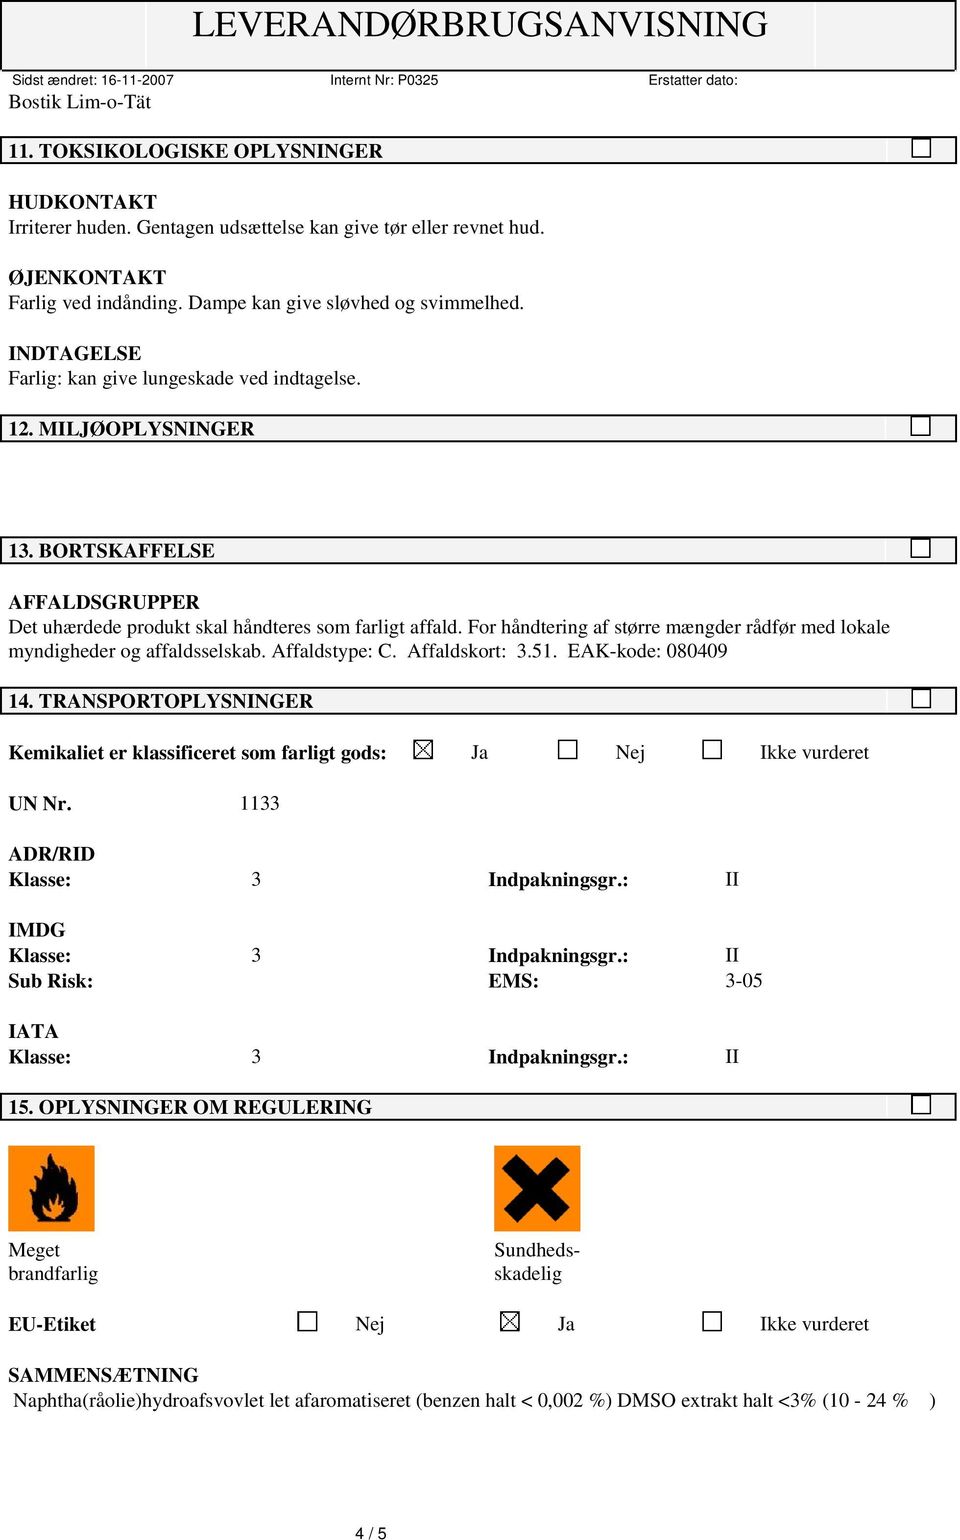 Affaldstype: C. Affaldskort: 3.51. EAK-kode: 080409 14. TRANSPORTOPLYSNINGER Kemikaliet er klassificeret som farligt gods: Ja Nej Ikke vurderet UN Nr. 1133 ADR/RID IMDG Sub Risk: EMS: 3-05 IATA 15.